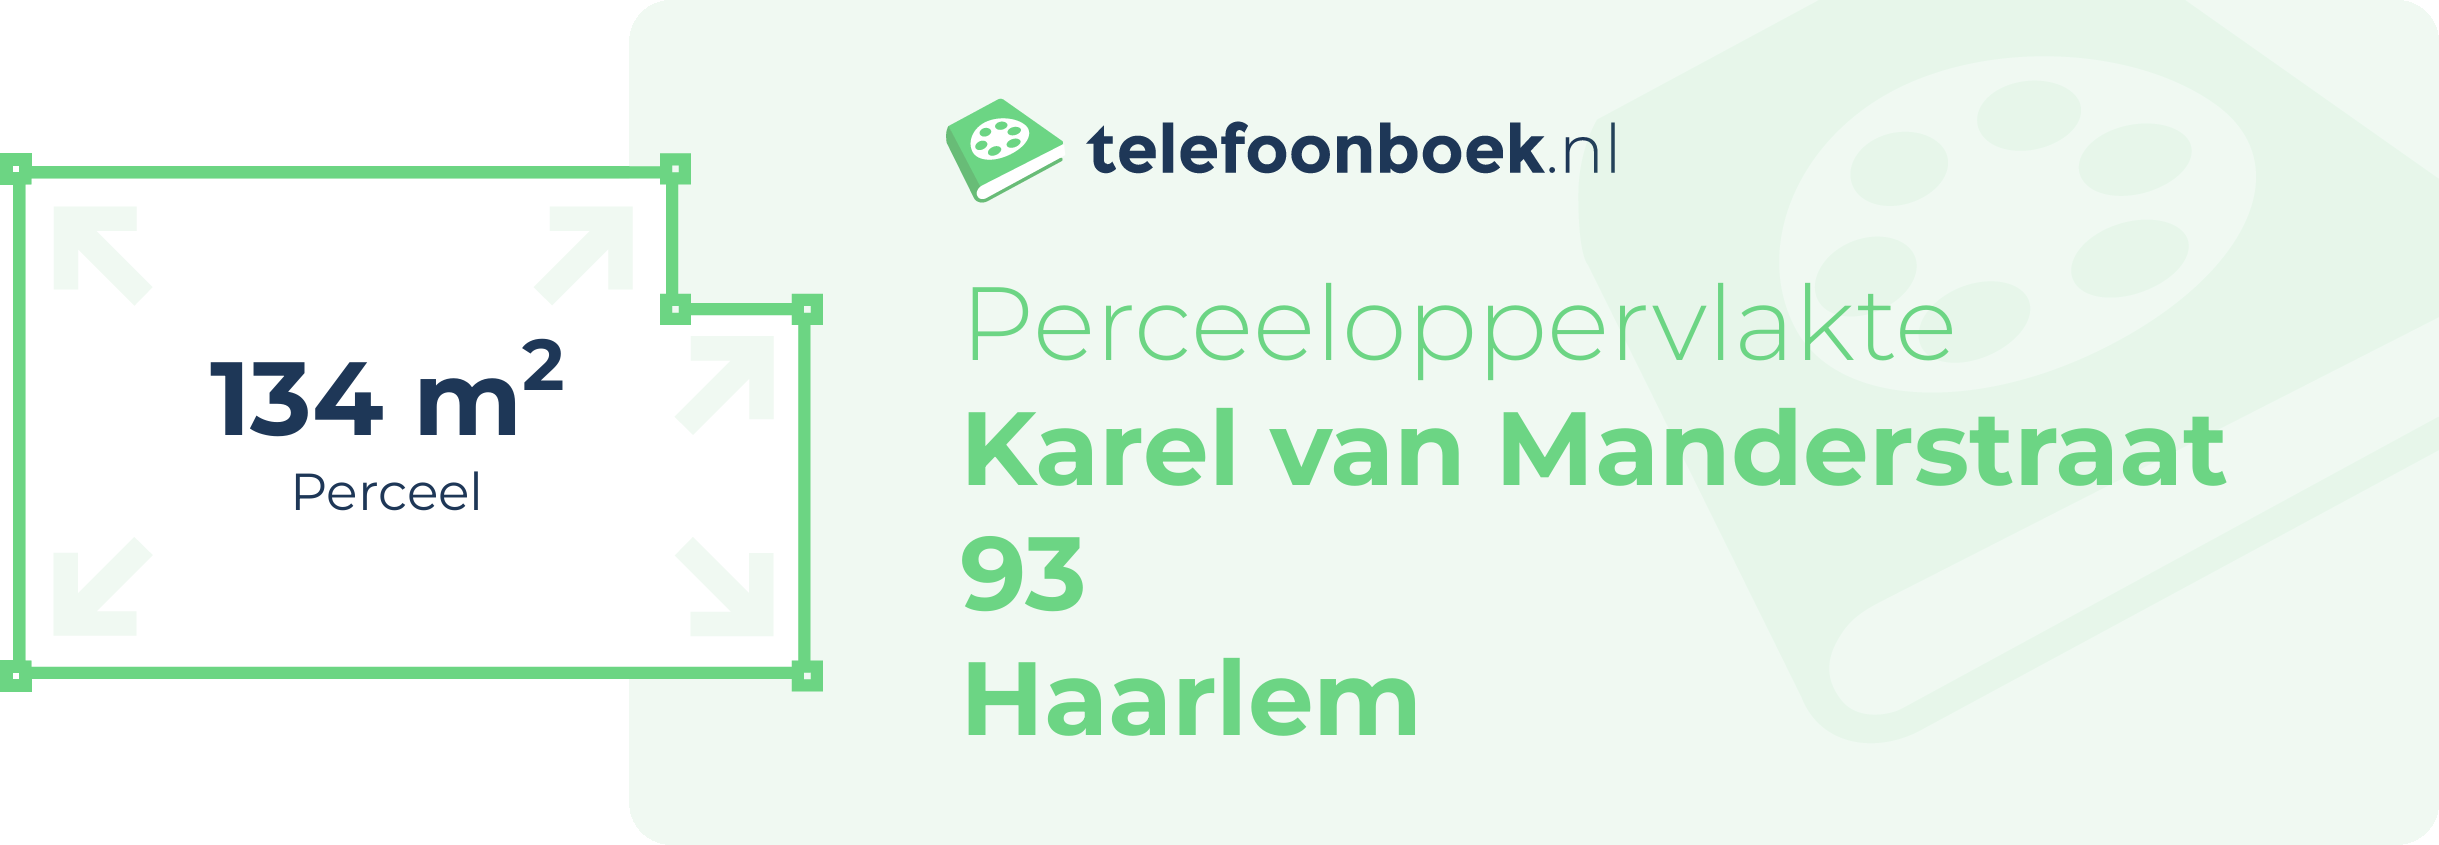 Perceeloppervlakte Karel Van Manderstraat 93 Haarlem